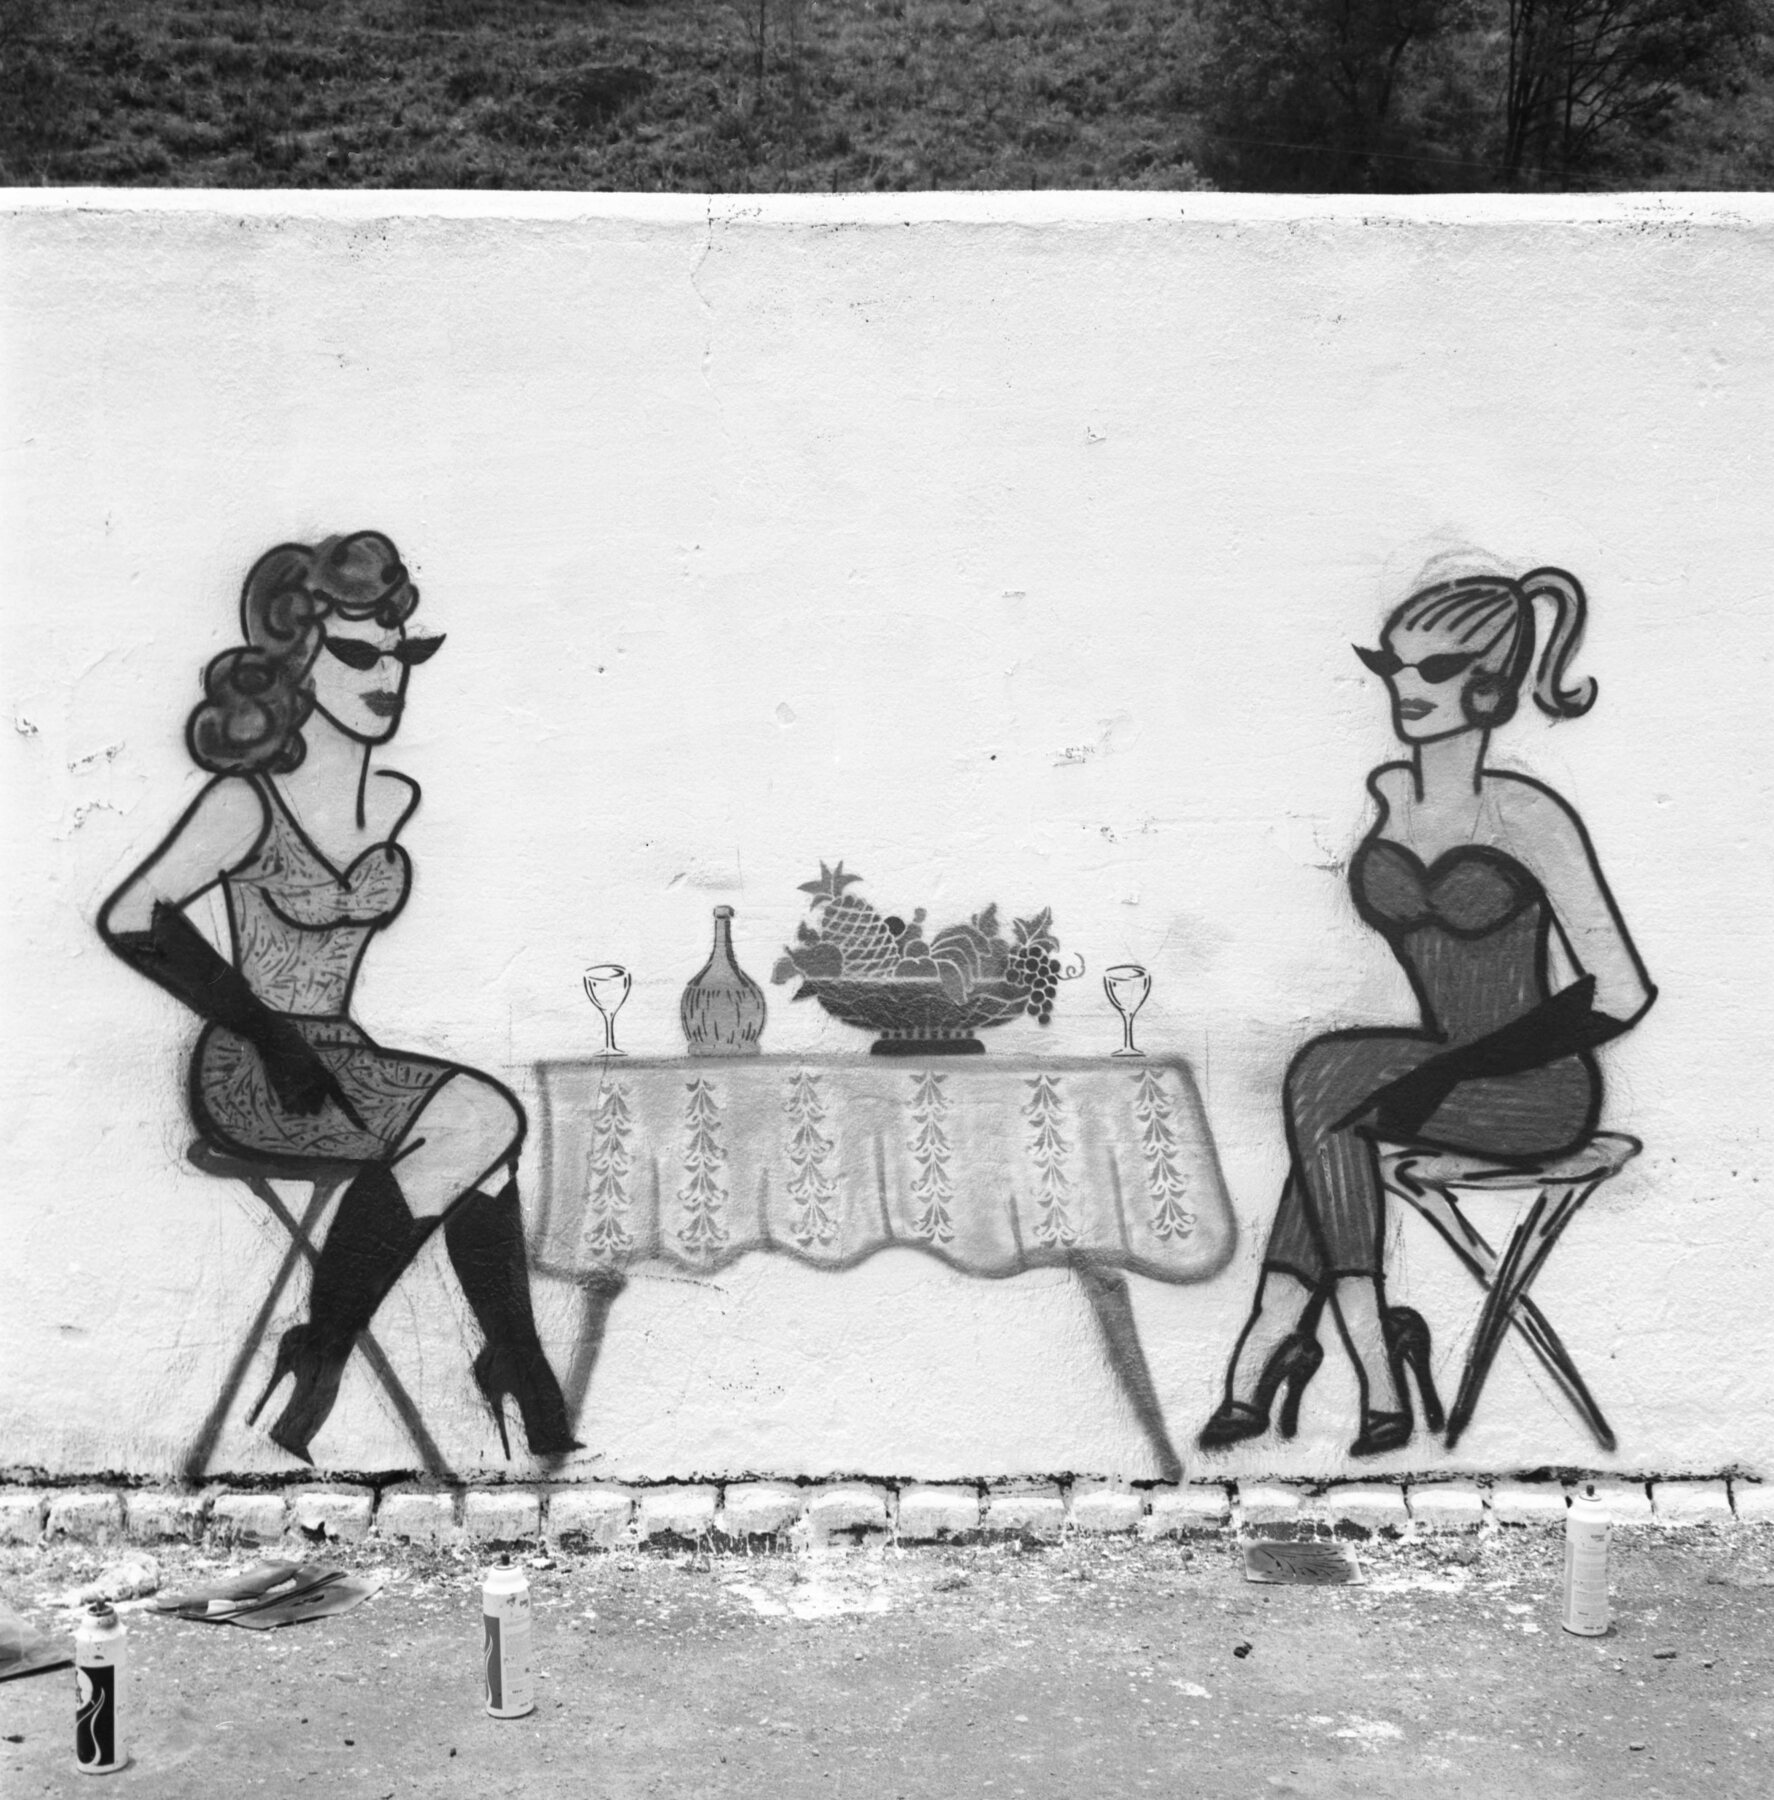 Fotografia em preto e branco. Grafite que mostra duas mulheres de óculos escuros sentadas em torno de uma mesa com frutas em uma fruteira, uma garrafa e duas taças. A mulher da esquerda tem cabelos escuros, está de vestido curto e botas pretas de salto alto. A mulher da direita tem cabelos claros, está de macacão decotado e usa sapatos de salto alto.